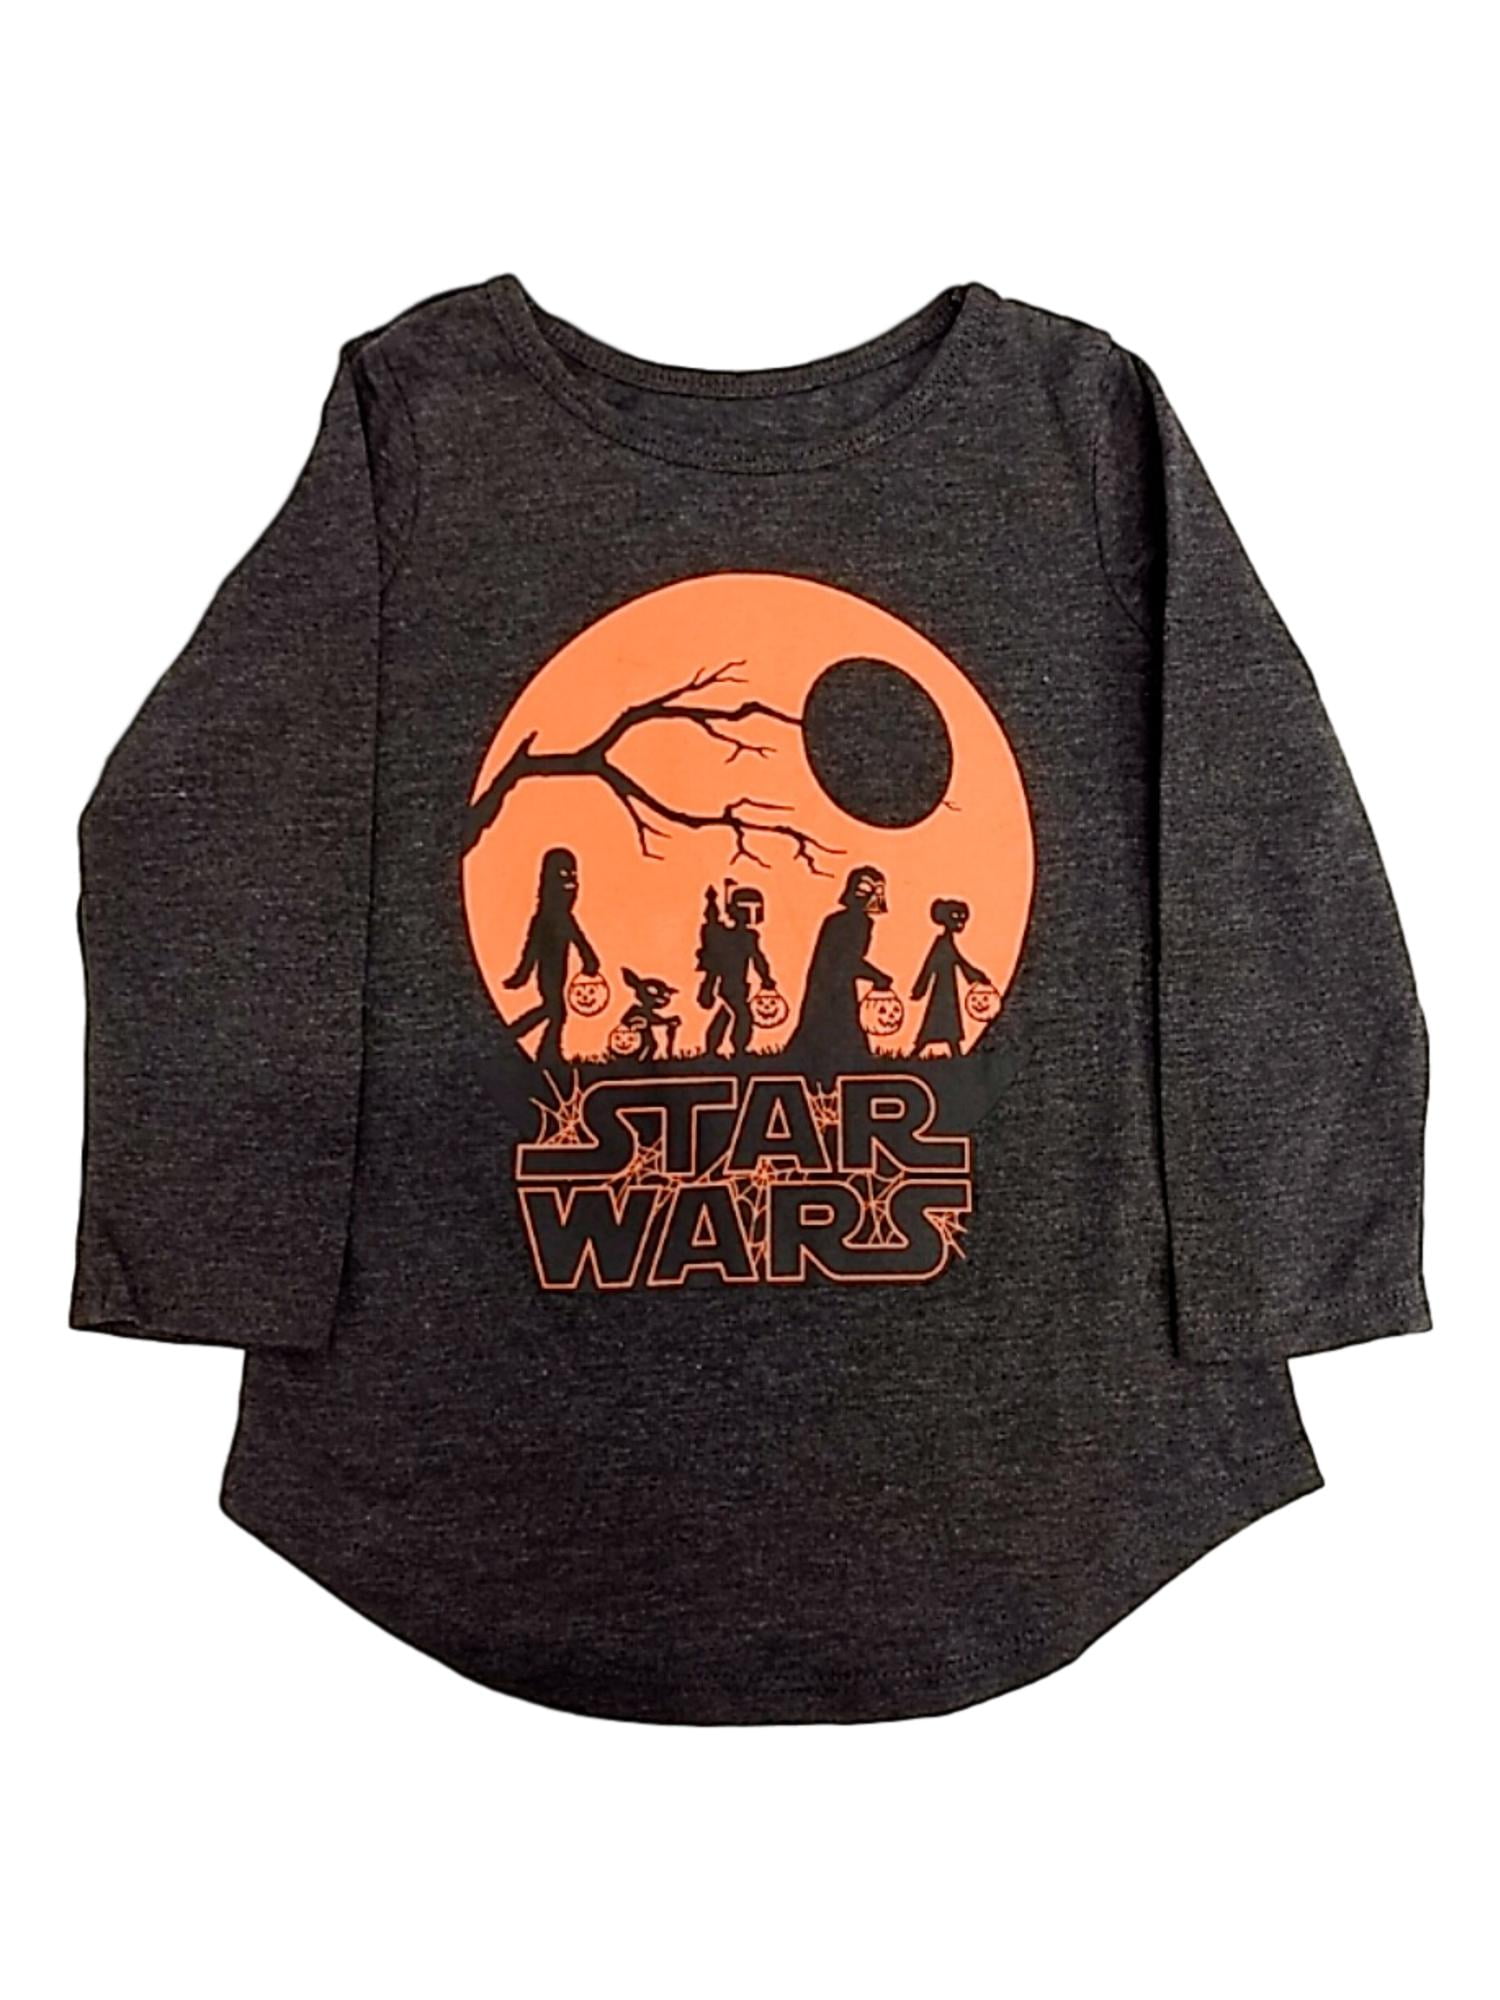 star wars t shirt toddler